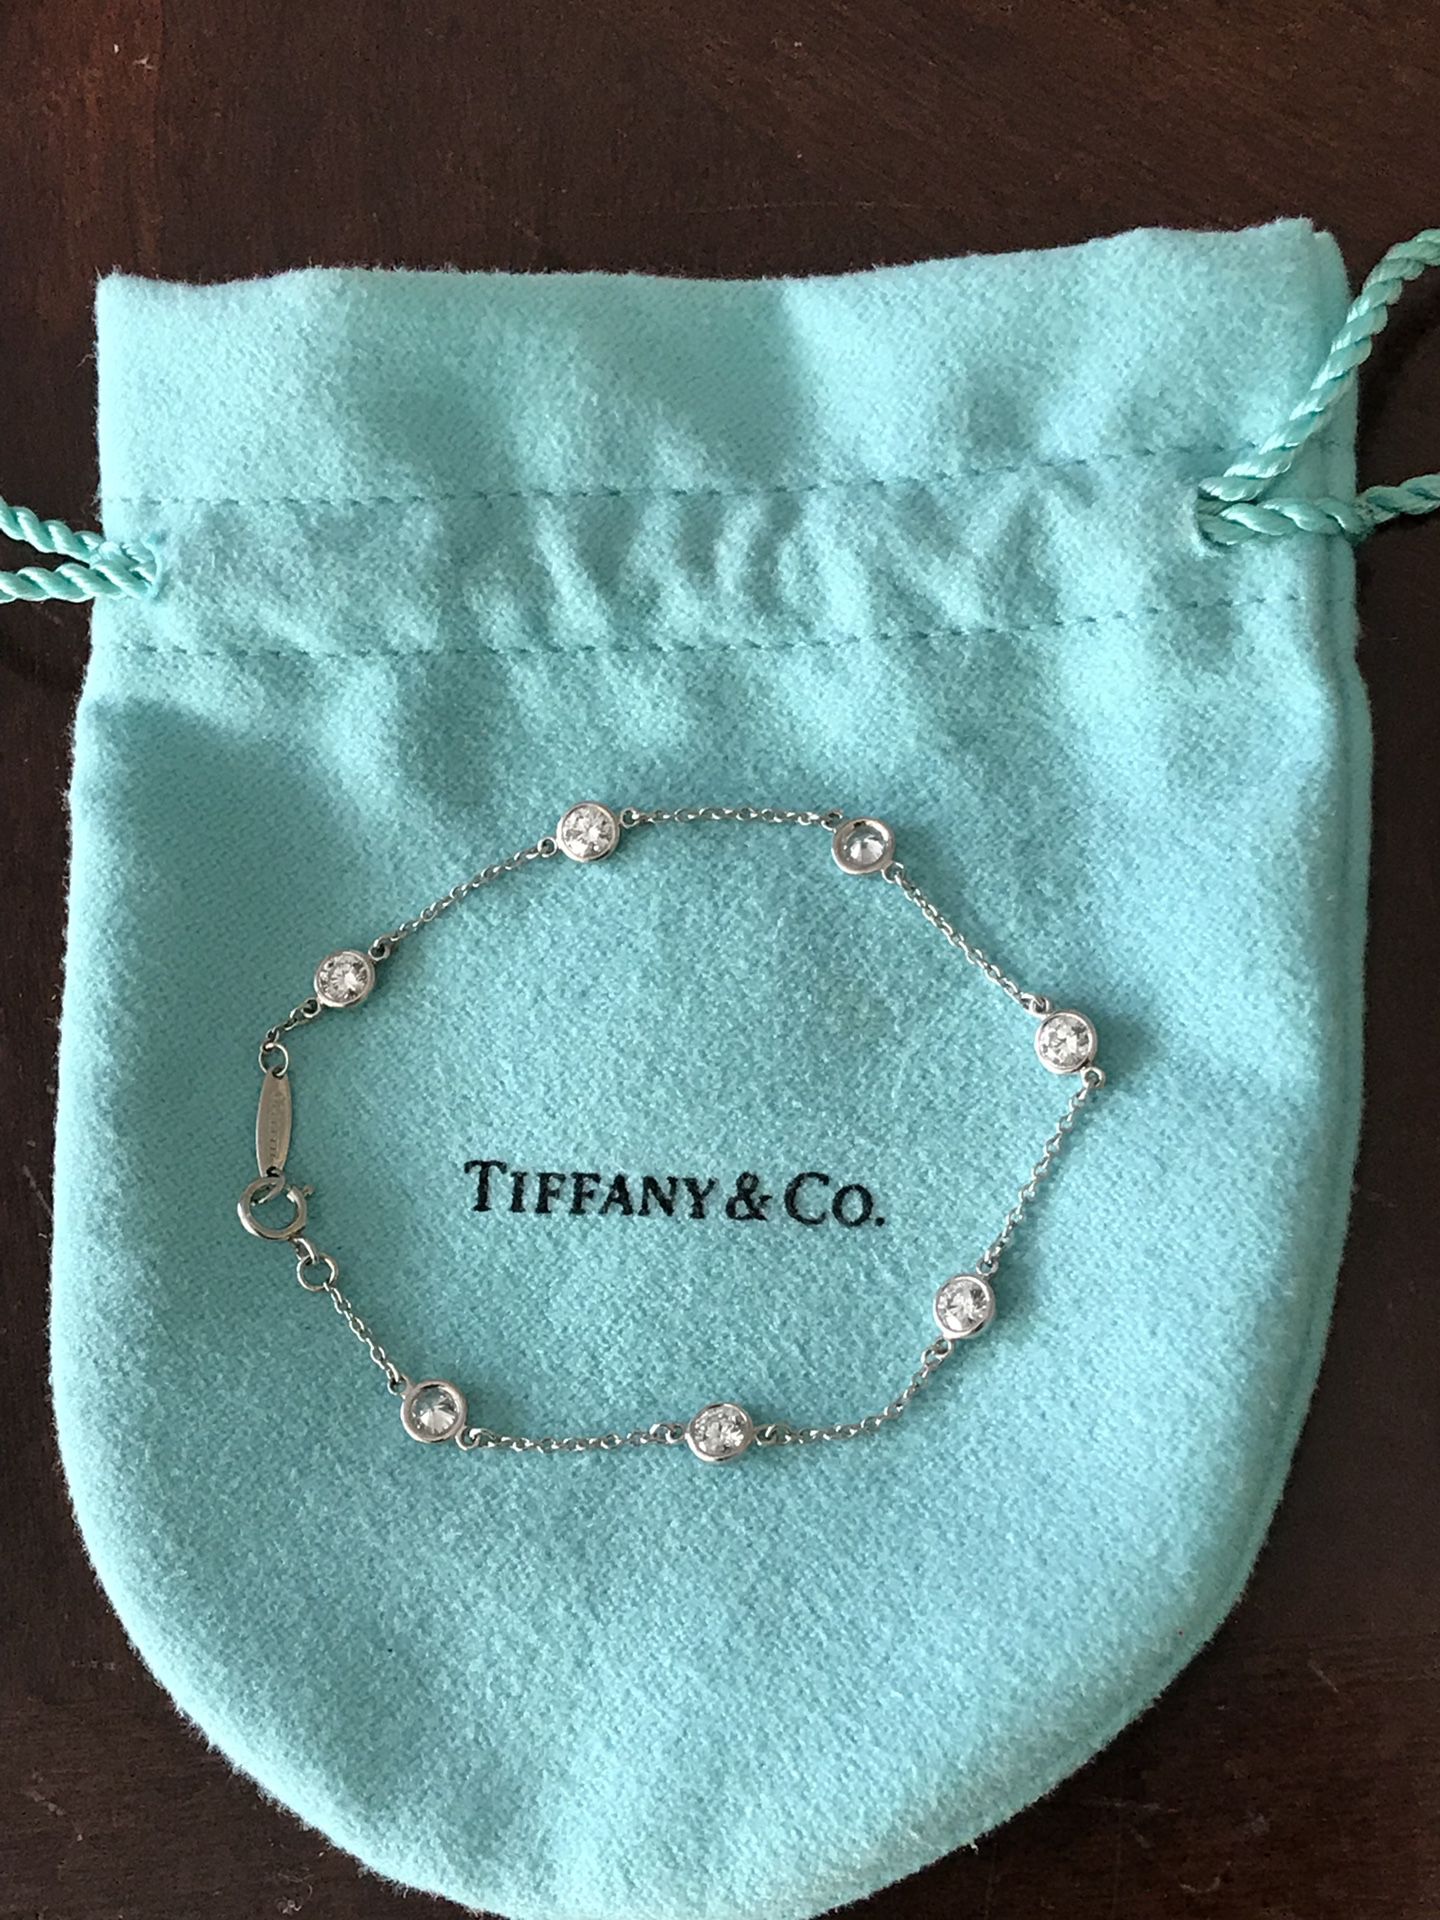 Tiffany & Co platinum Elsa pereti .98 ct diamond bracelet